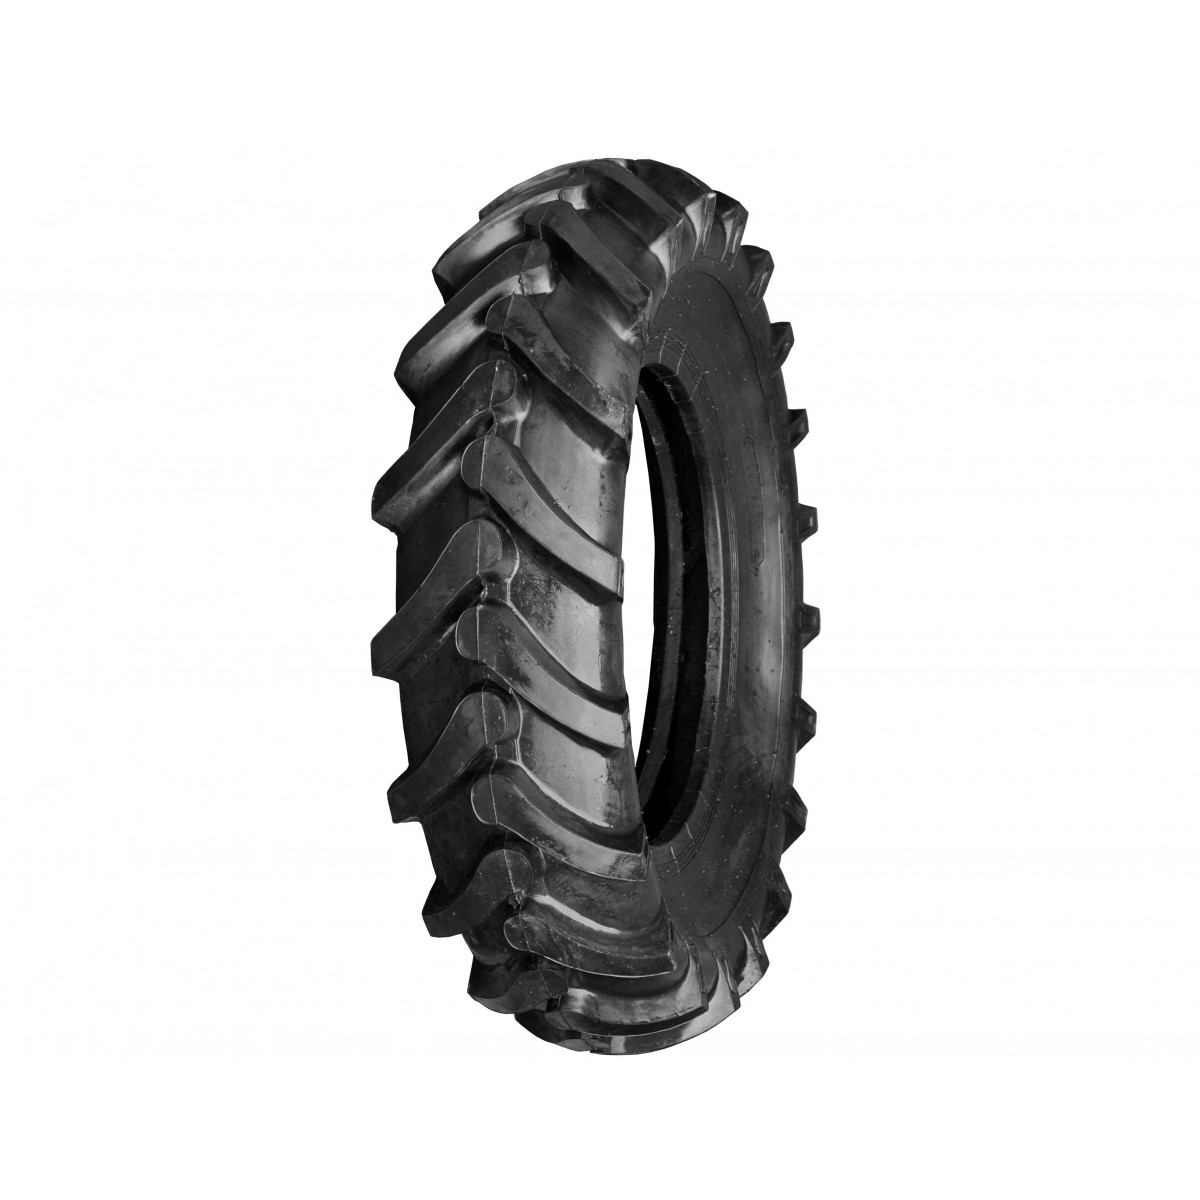 Agricultural tire 13.6-26 8PR 13.6x26 FIR